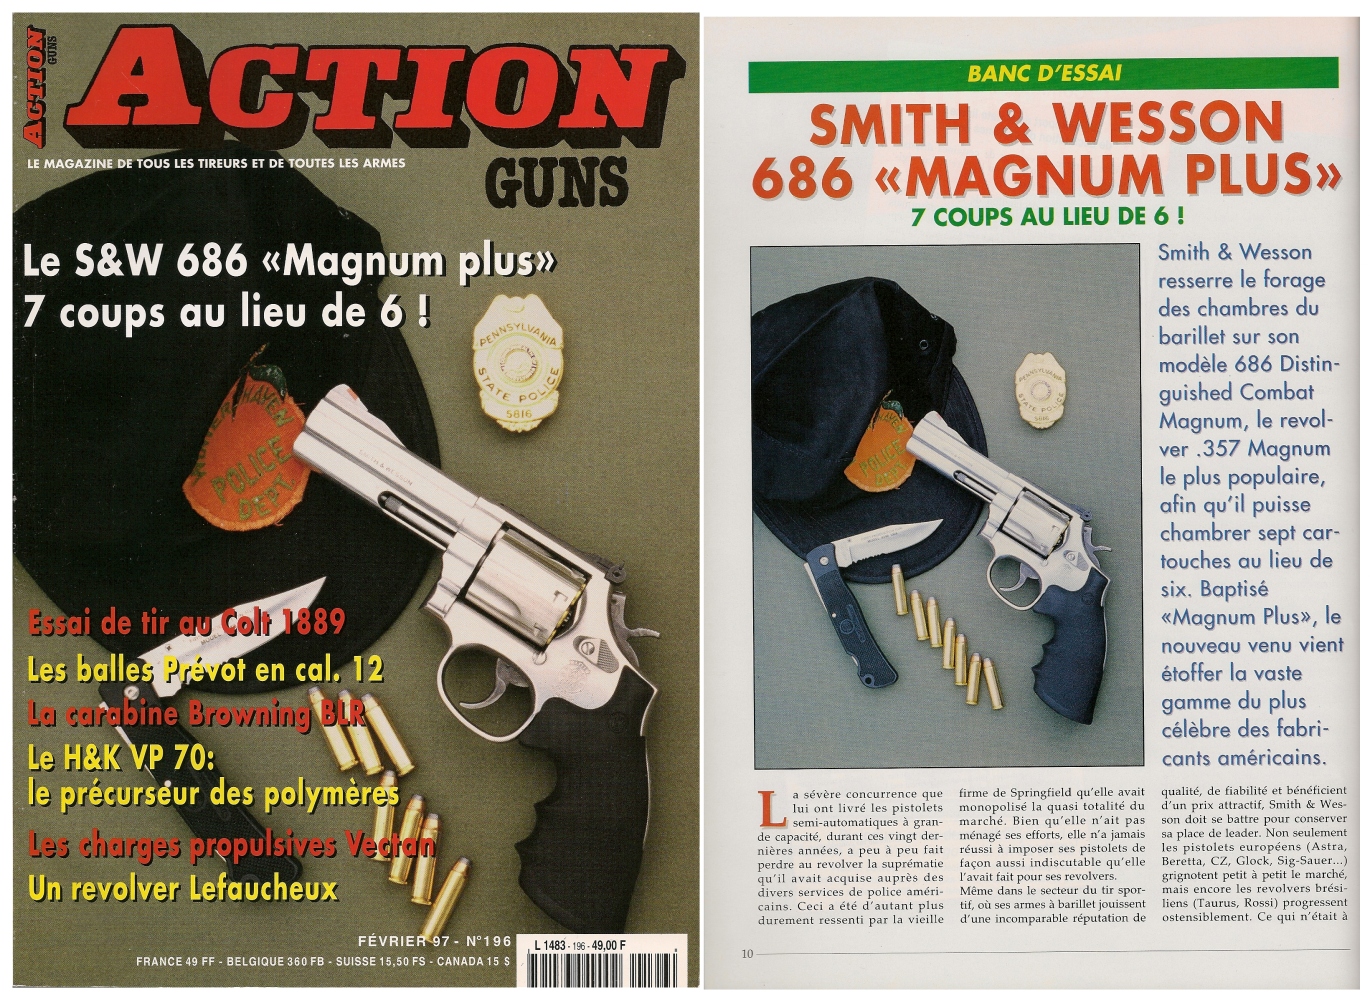 Le banc d'essai du revolver S&W 686 Magnum Plus a été publié sur 6 pages dans le magazine Action Guns n° 196 (février 1997).